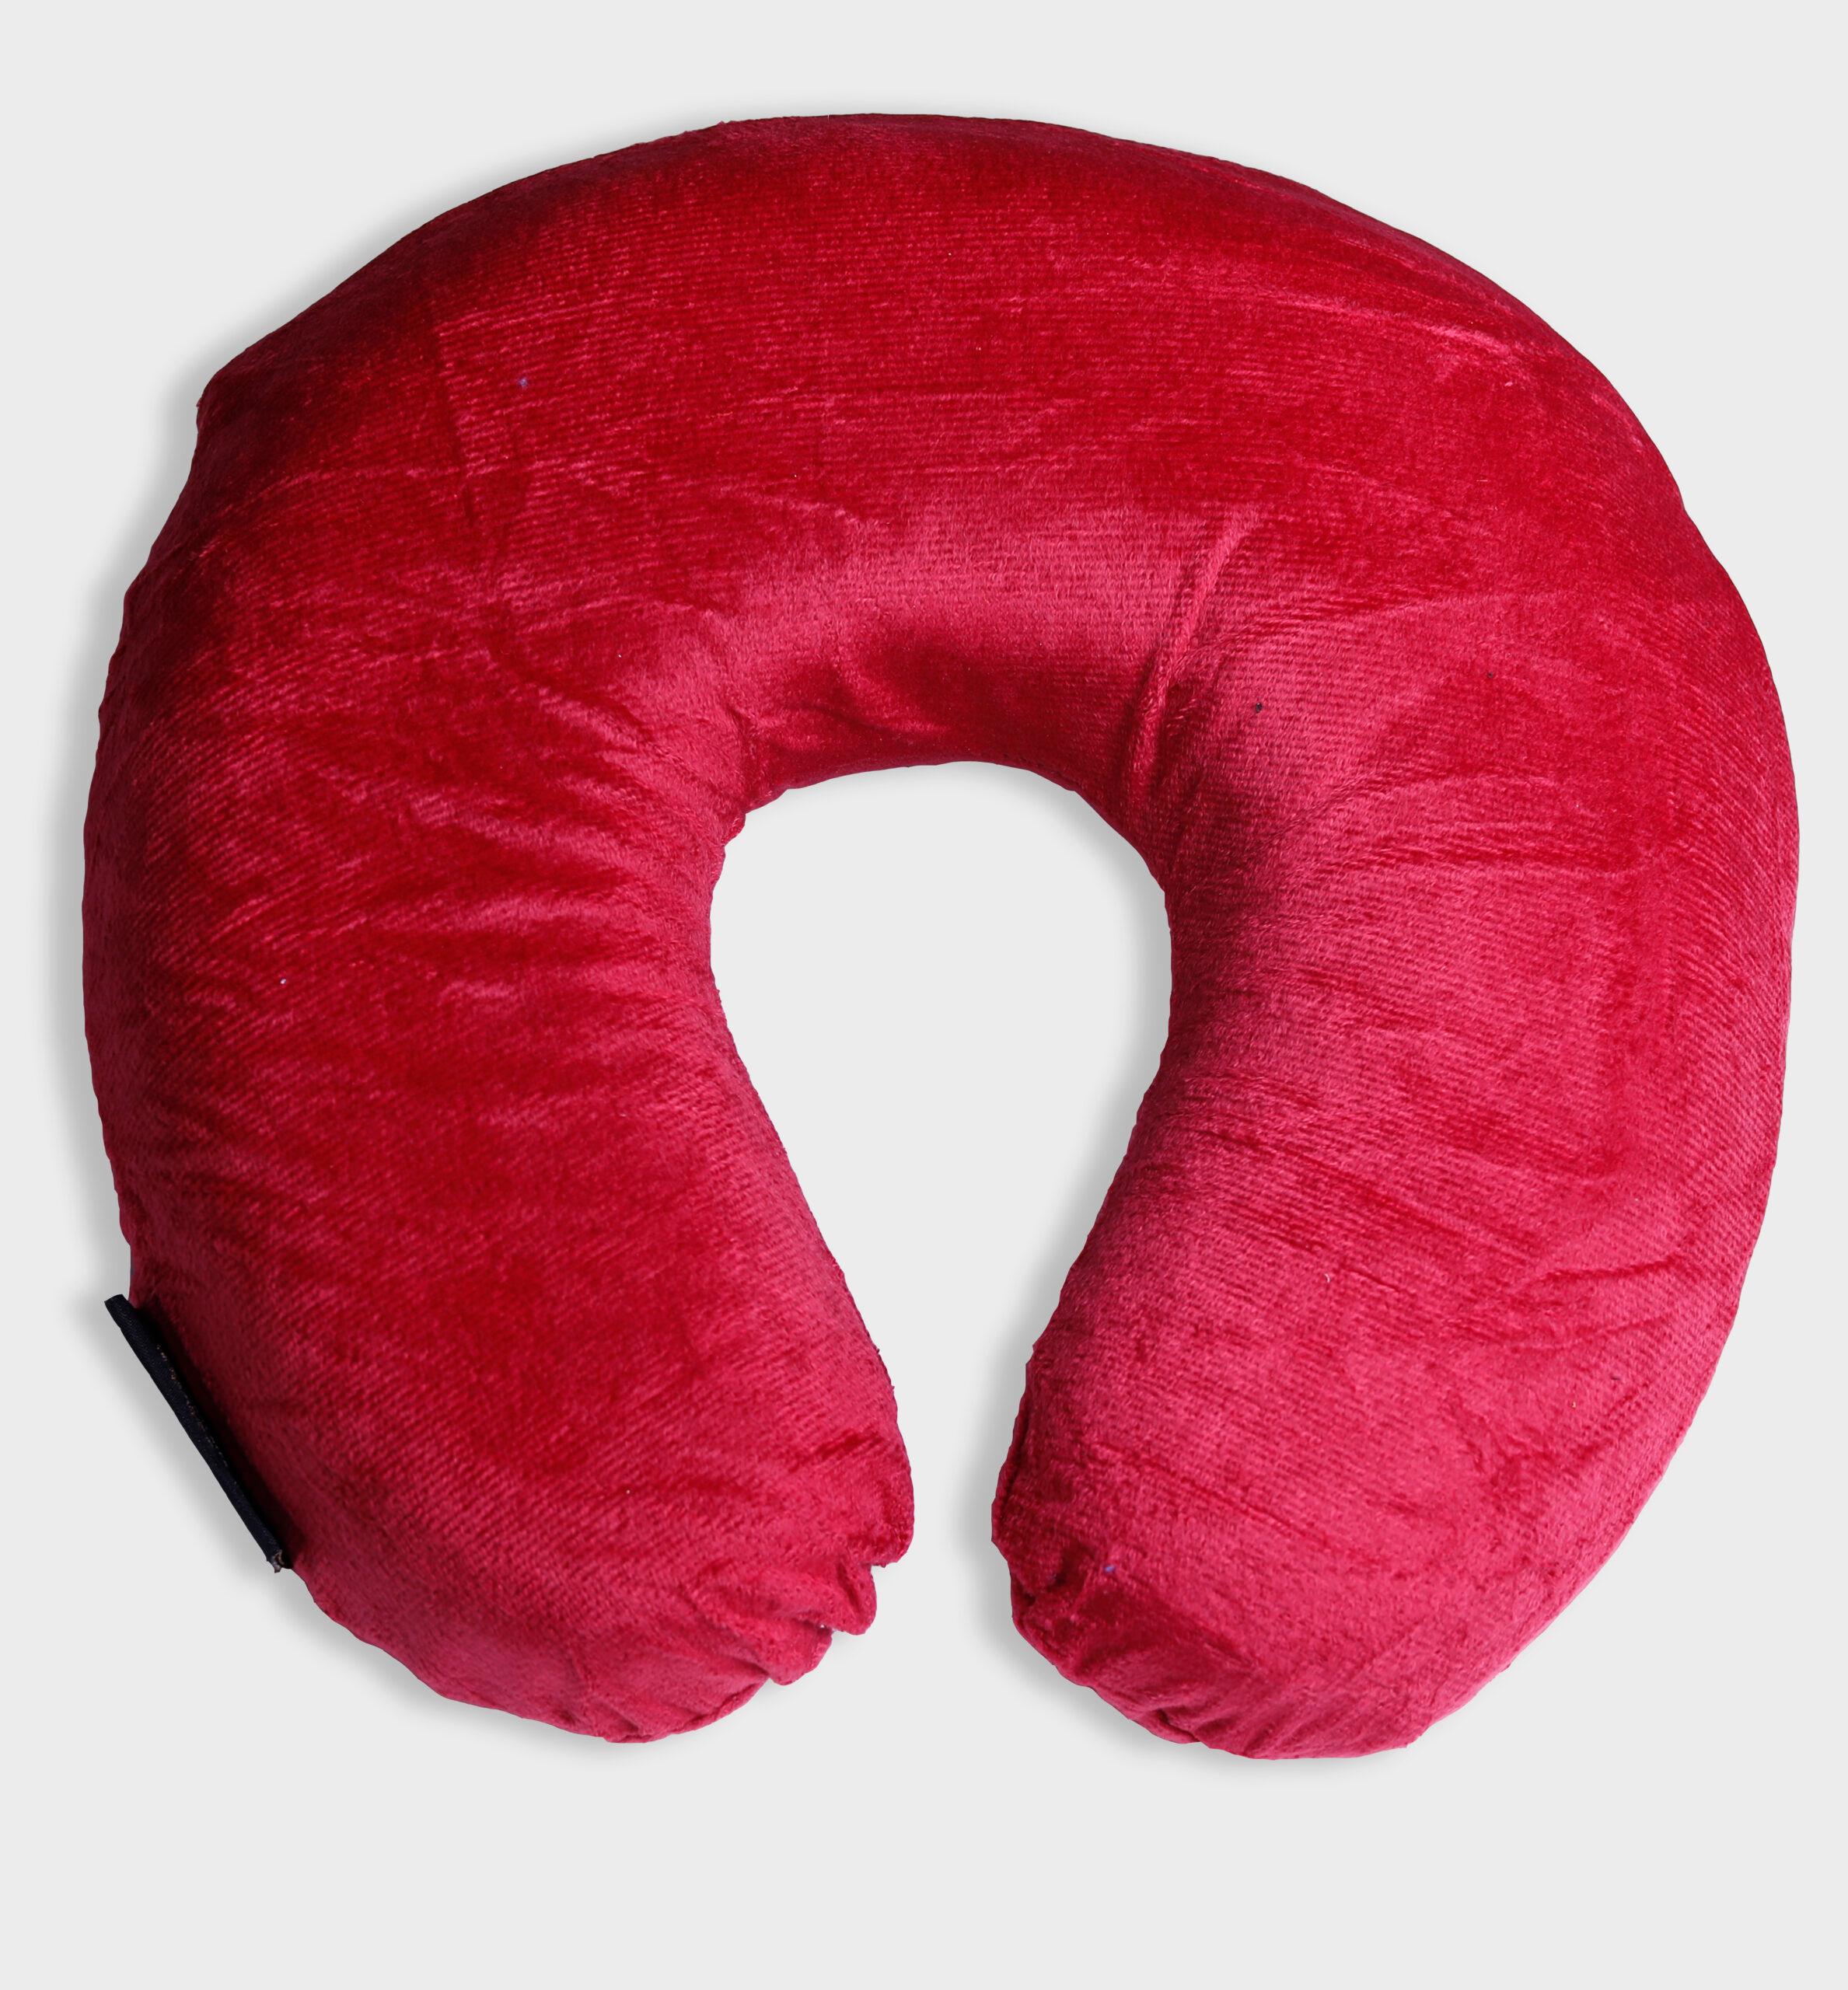 وسادة رقبة - أحمر PARRY LIFE Inflatable Neck Pillow